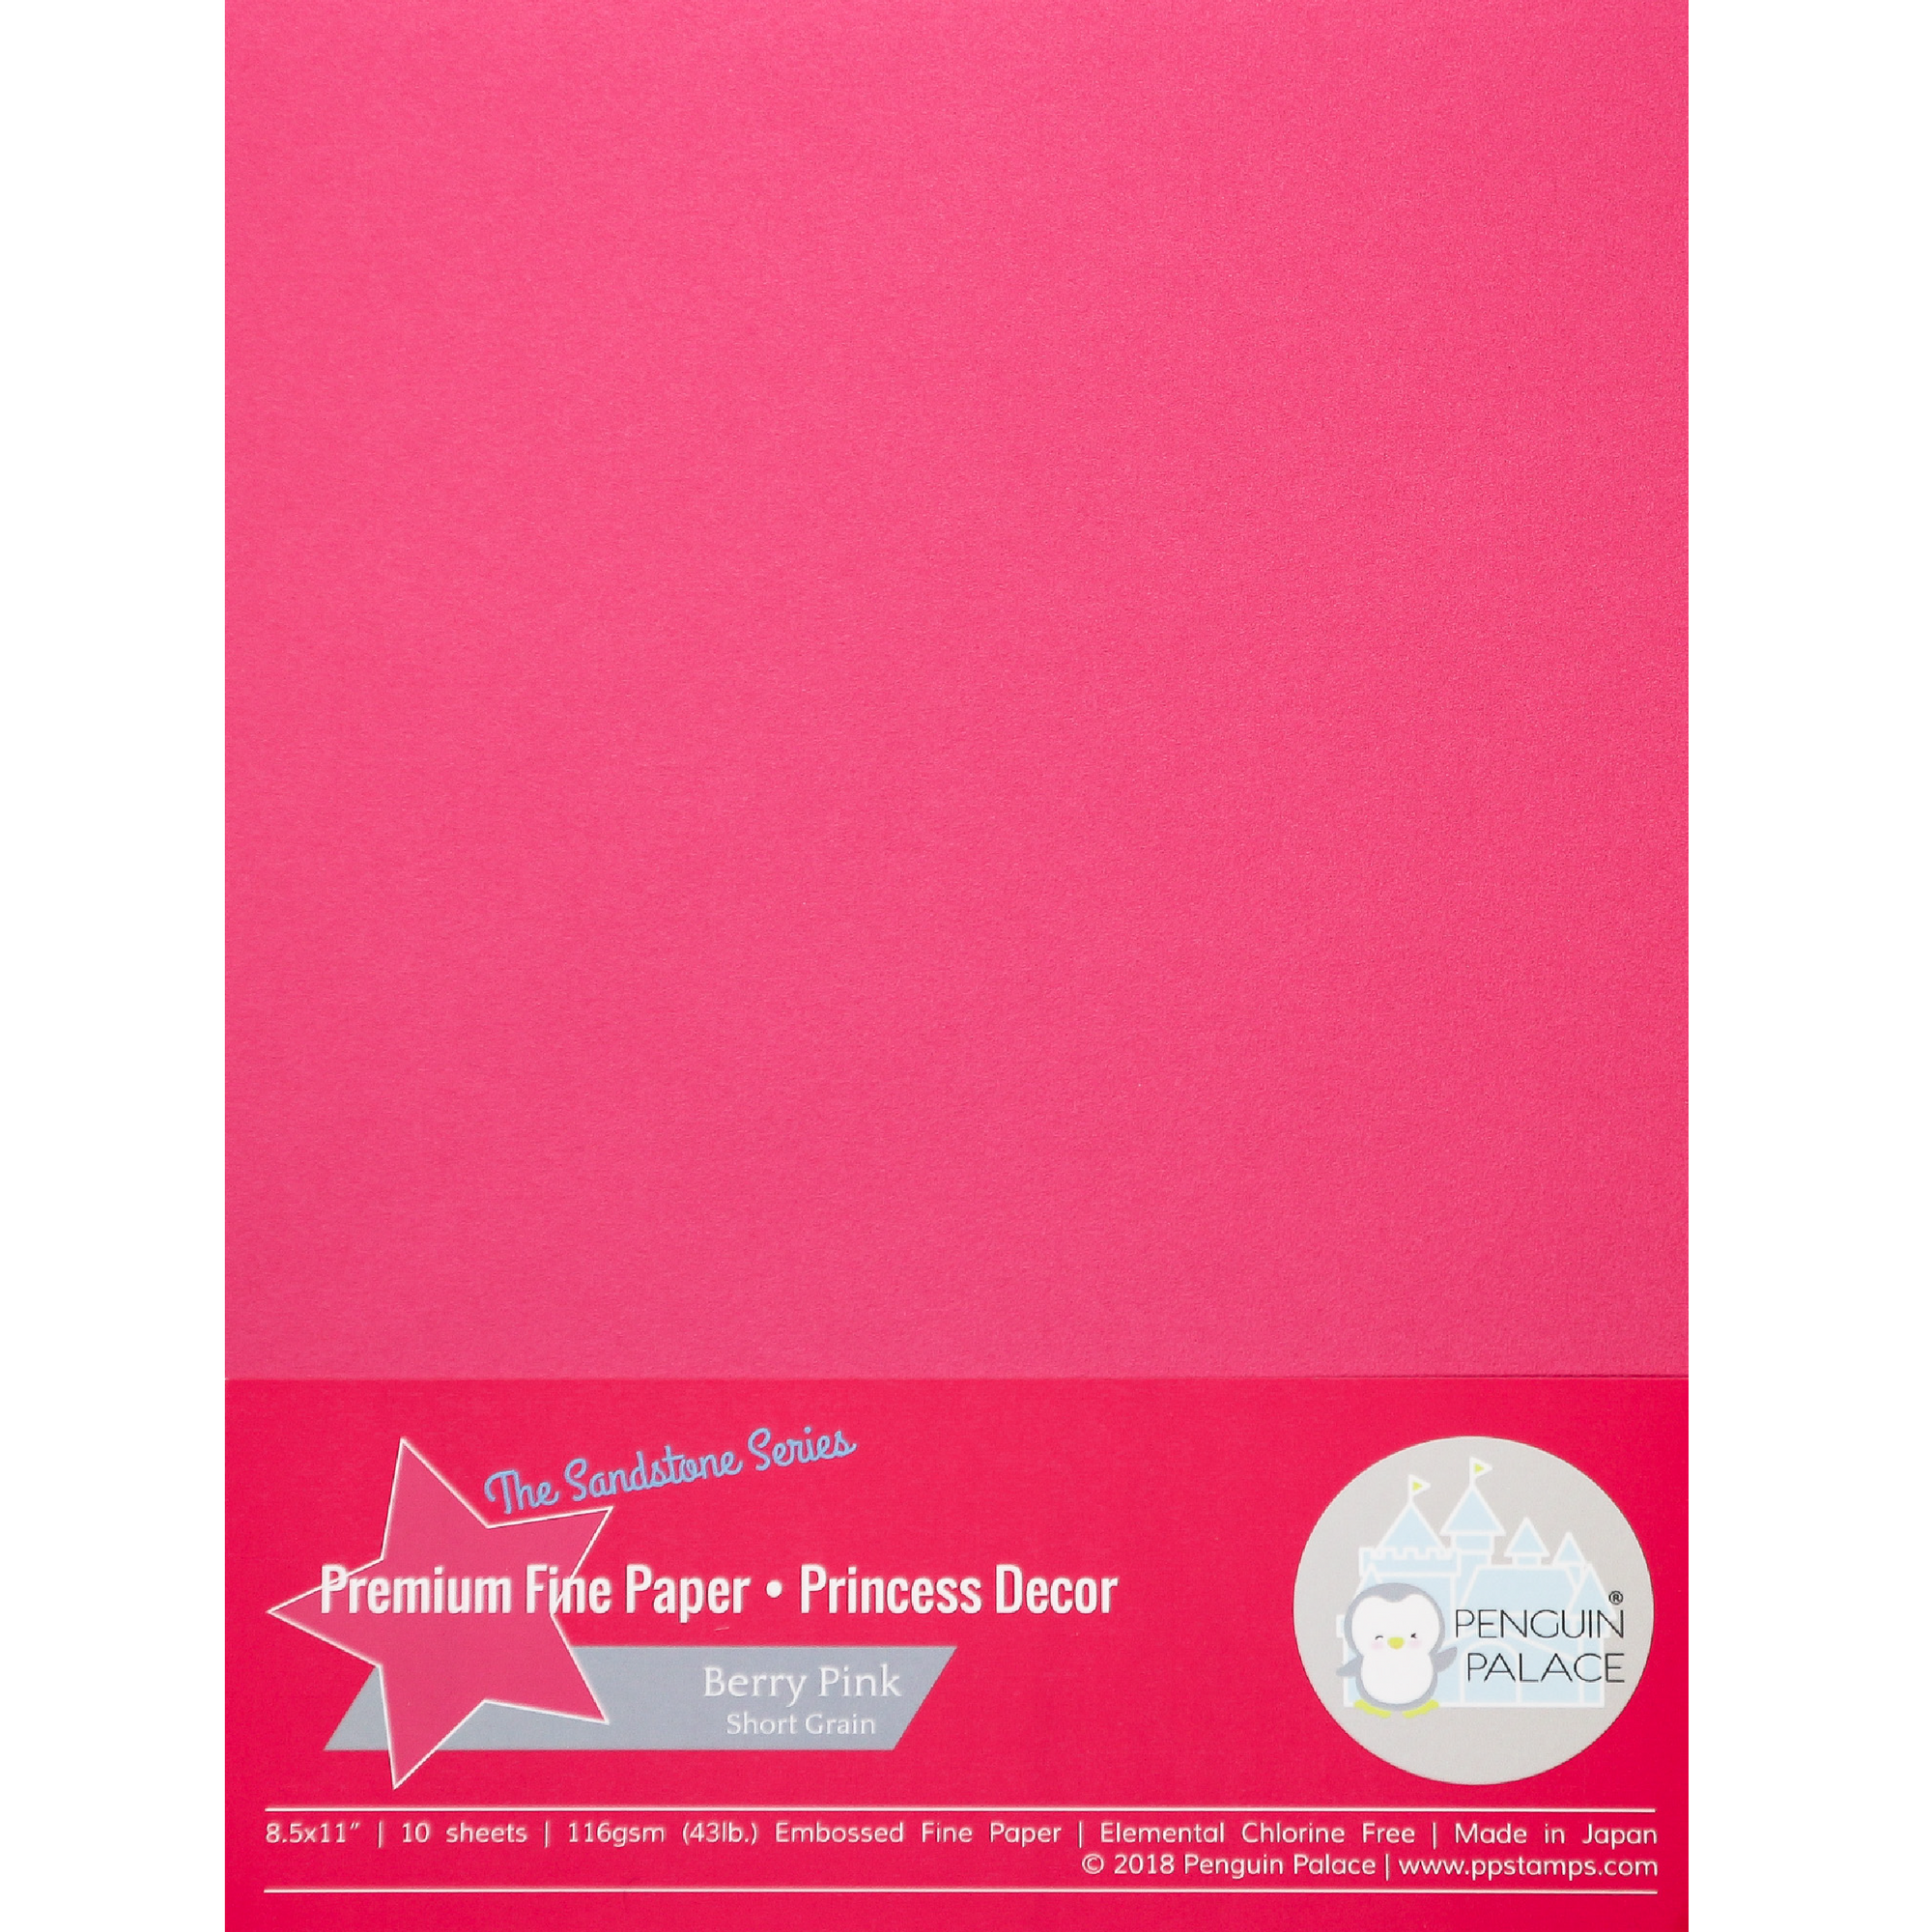 The Sandstone Series - Princess Decor - Premium Fine Paper